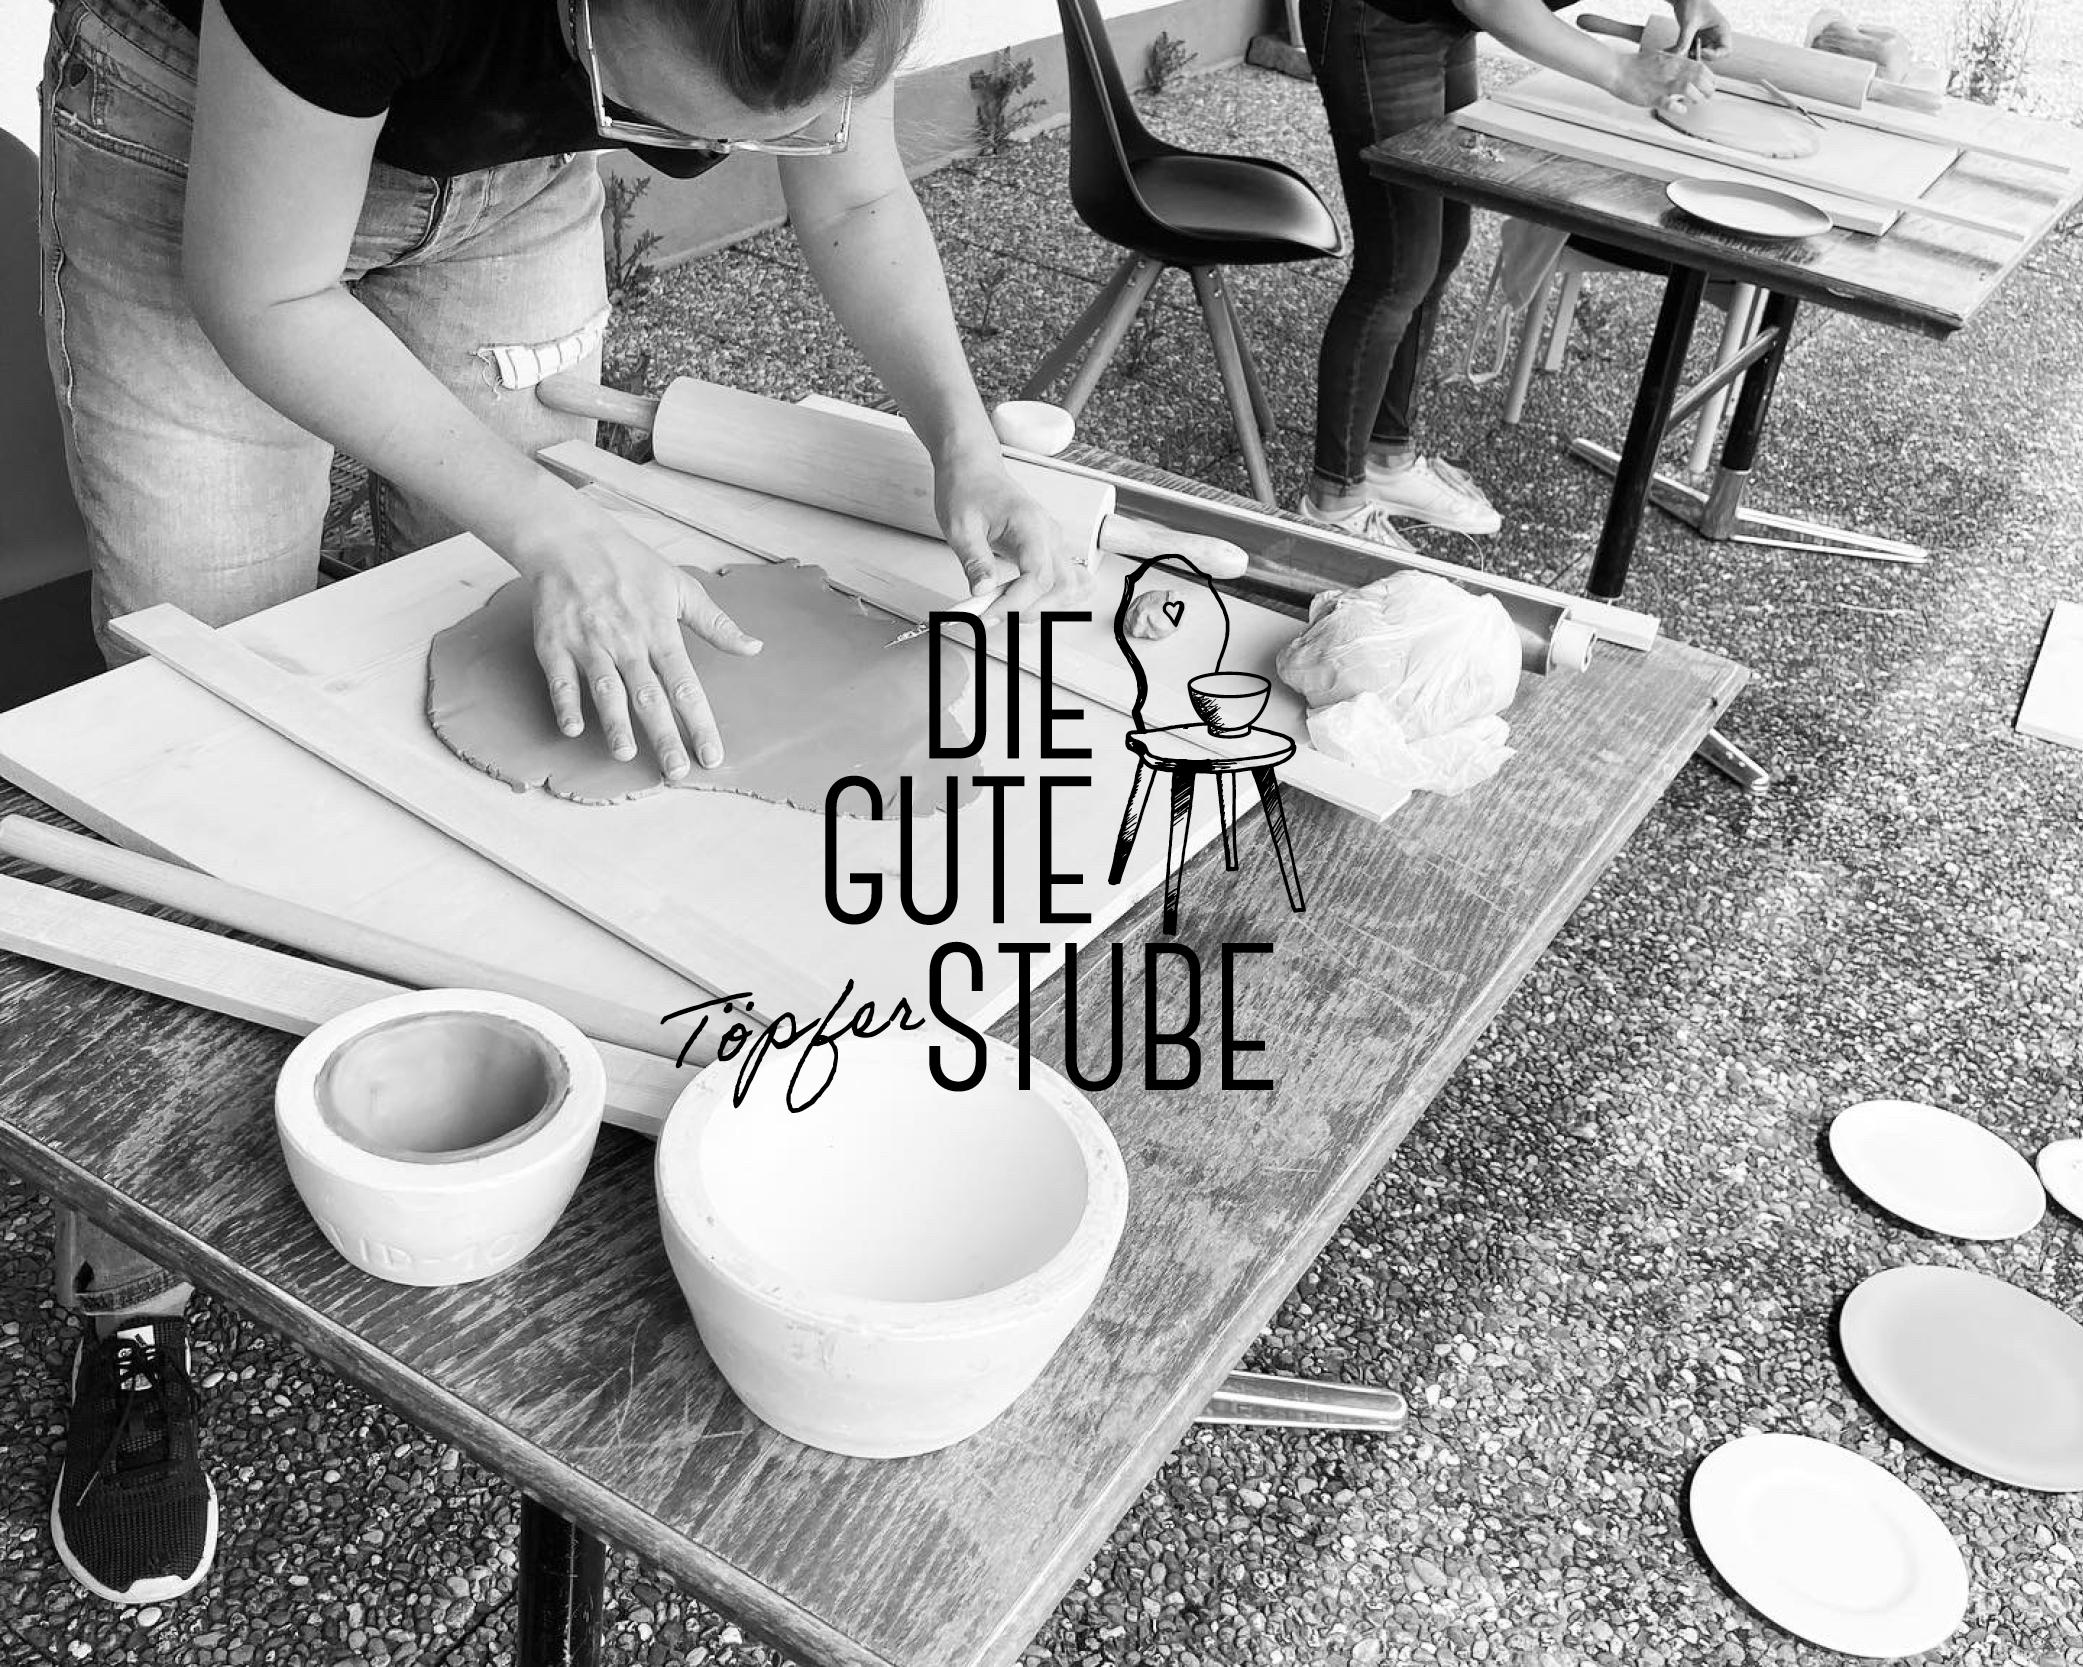 Die Gute Töpferstube öffnet sich. Keramik Werkstatt mitten im Bregenzerwald.